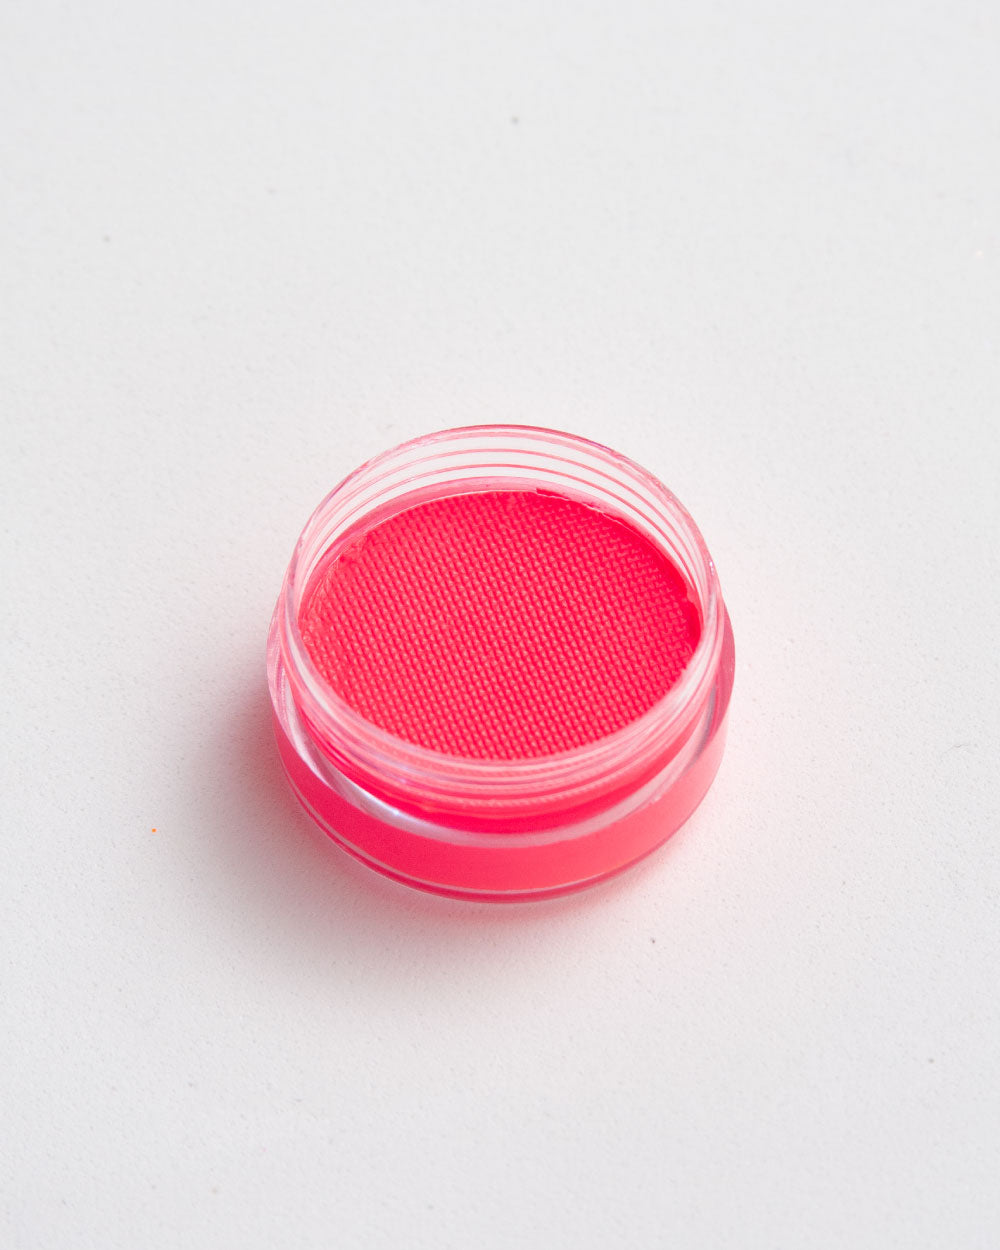 Dollface - Neon Pink Liquid Liner - Lunautics